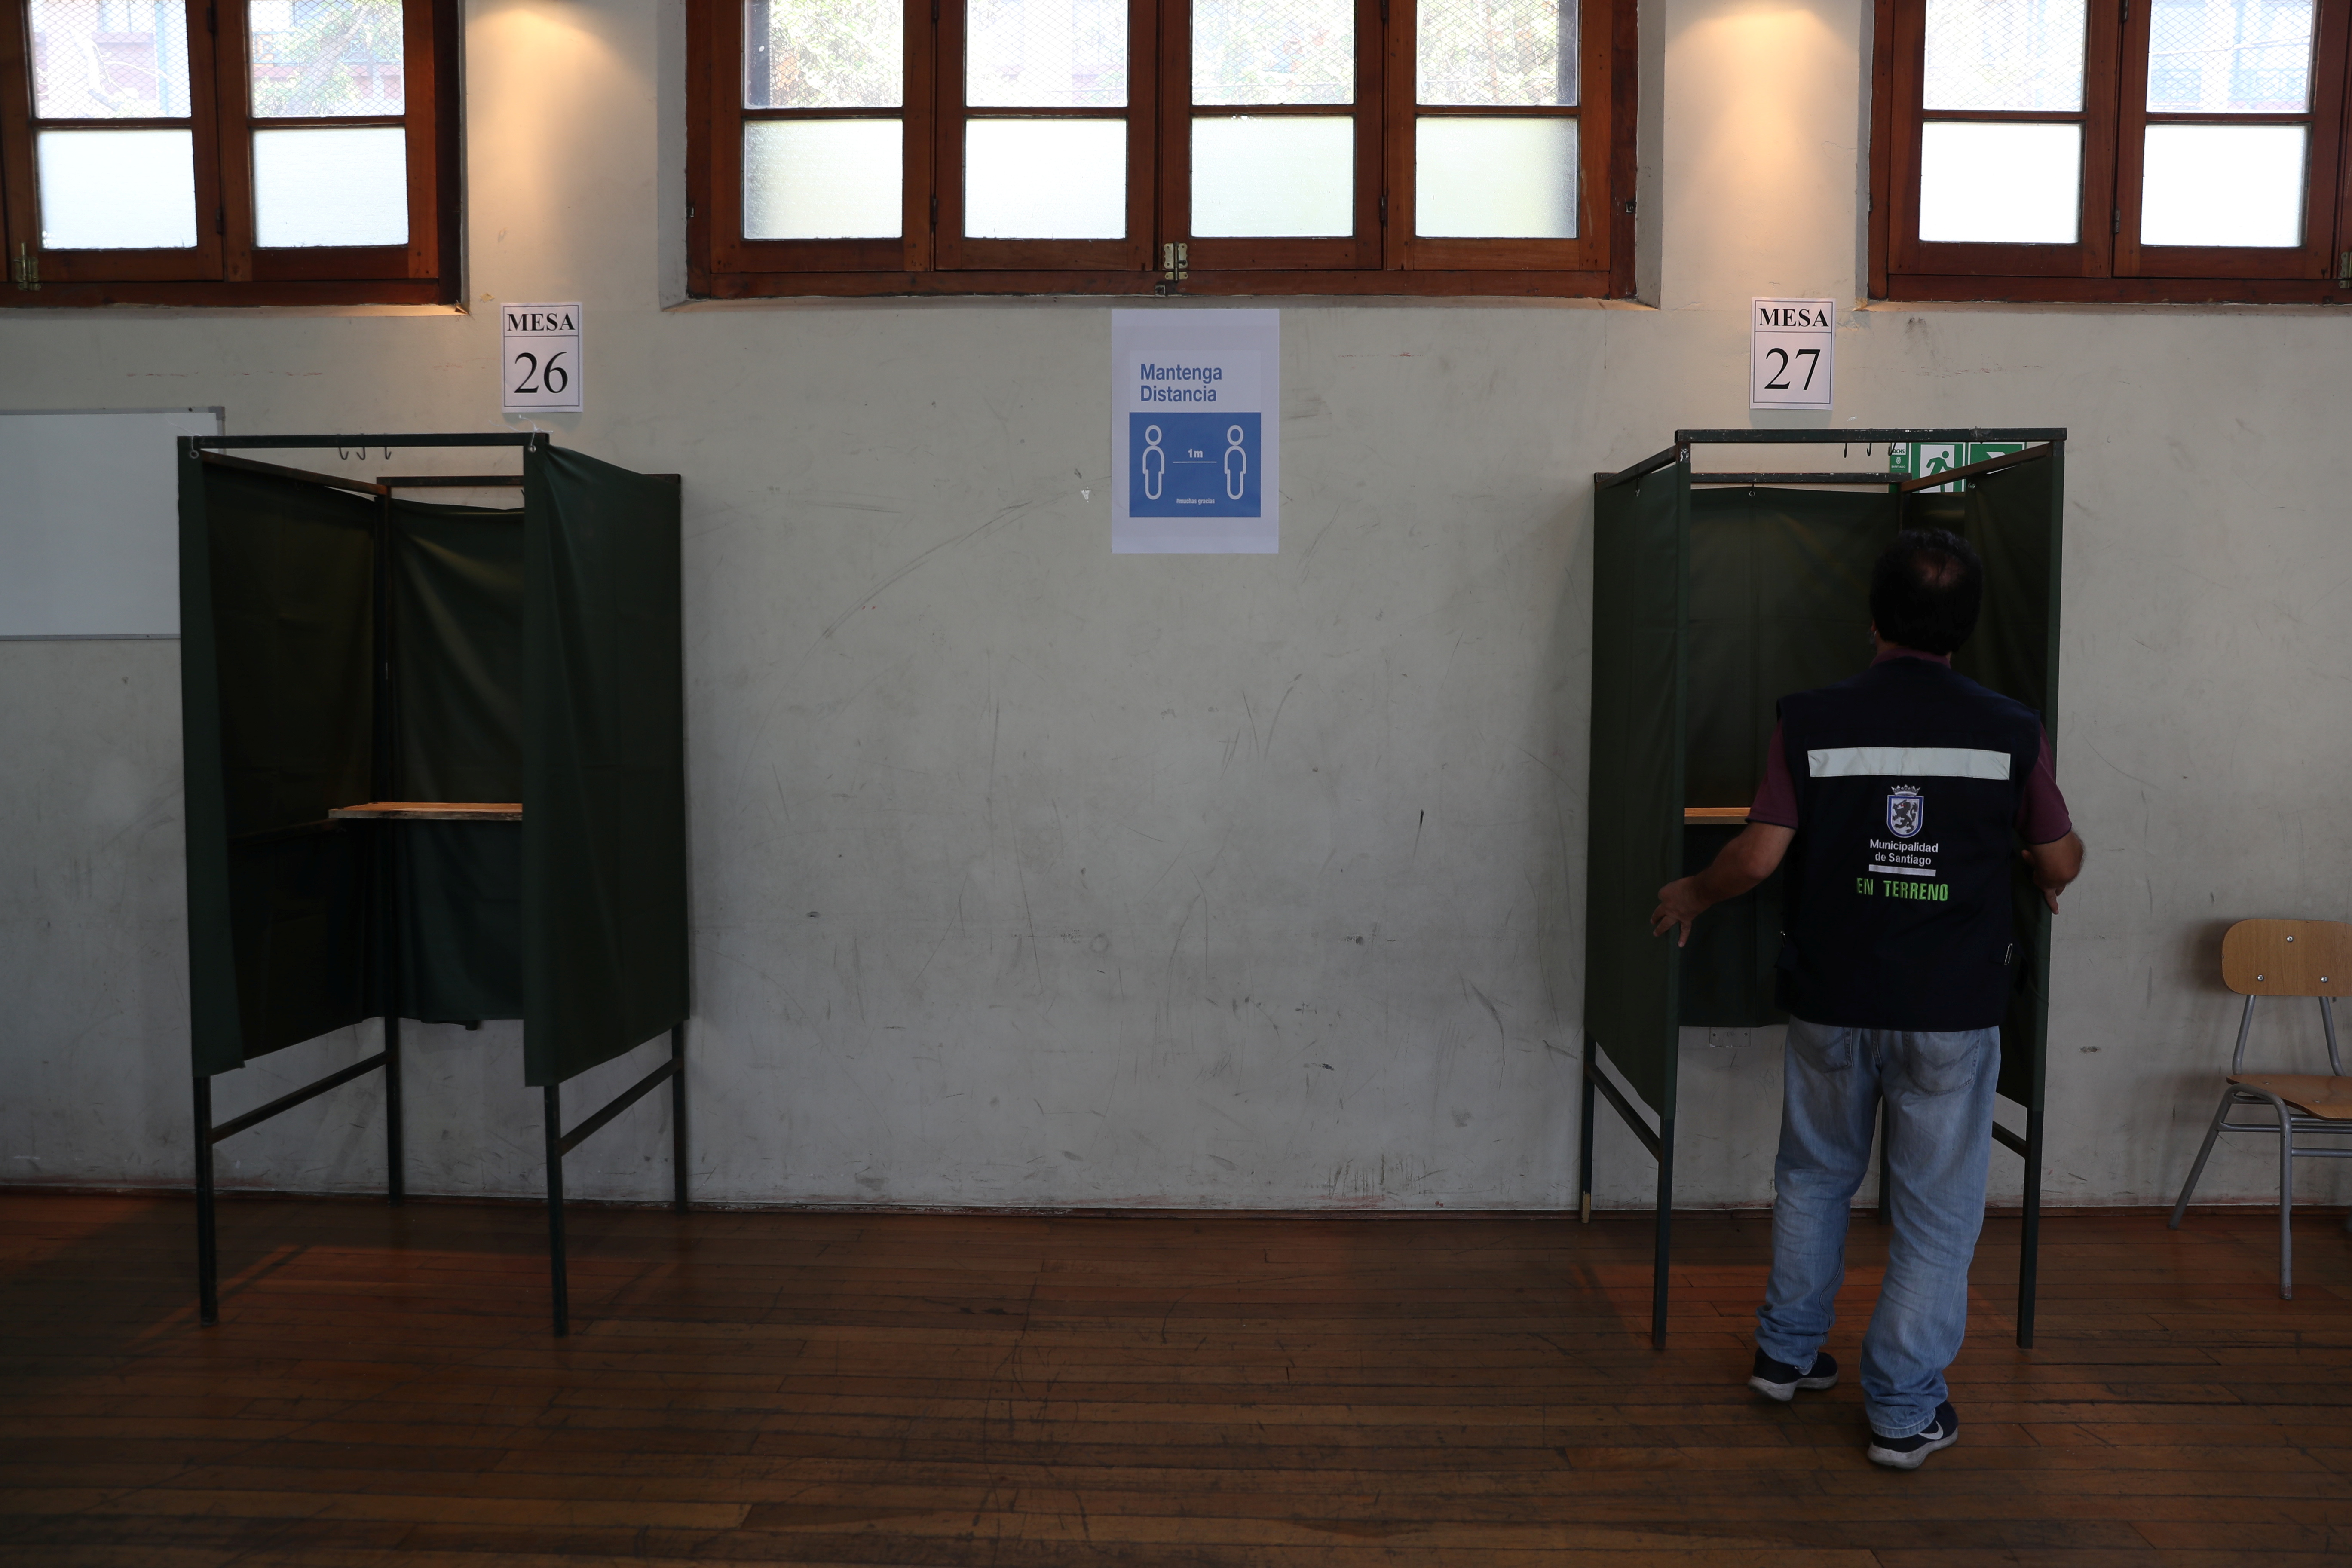 Un trabajador arregla una cabina de votación dentro de un colegio electoral durante un simulacro de votación antes del próximo referéndum sobre una nueva constitución chilena en Santiago, Chile, el 23 de octubre de 2020